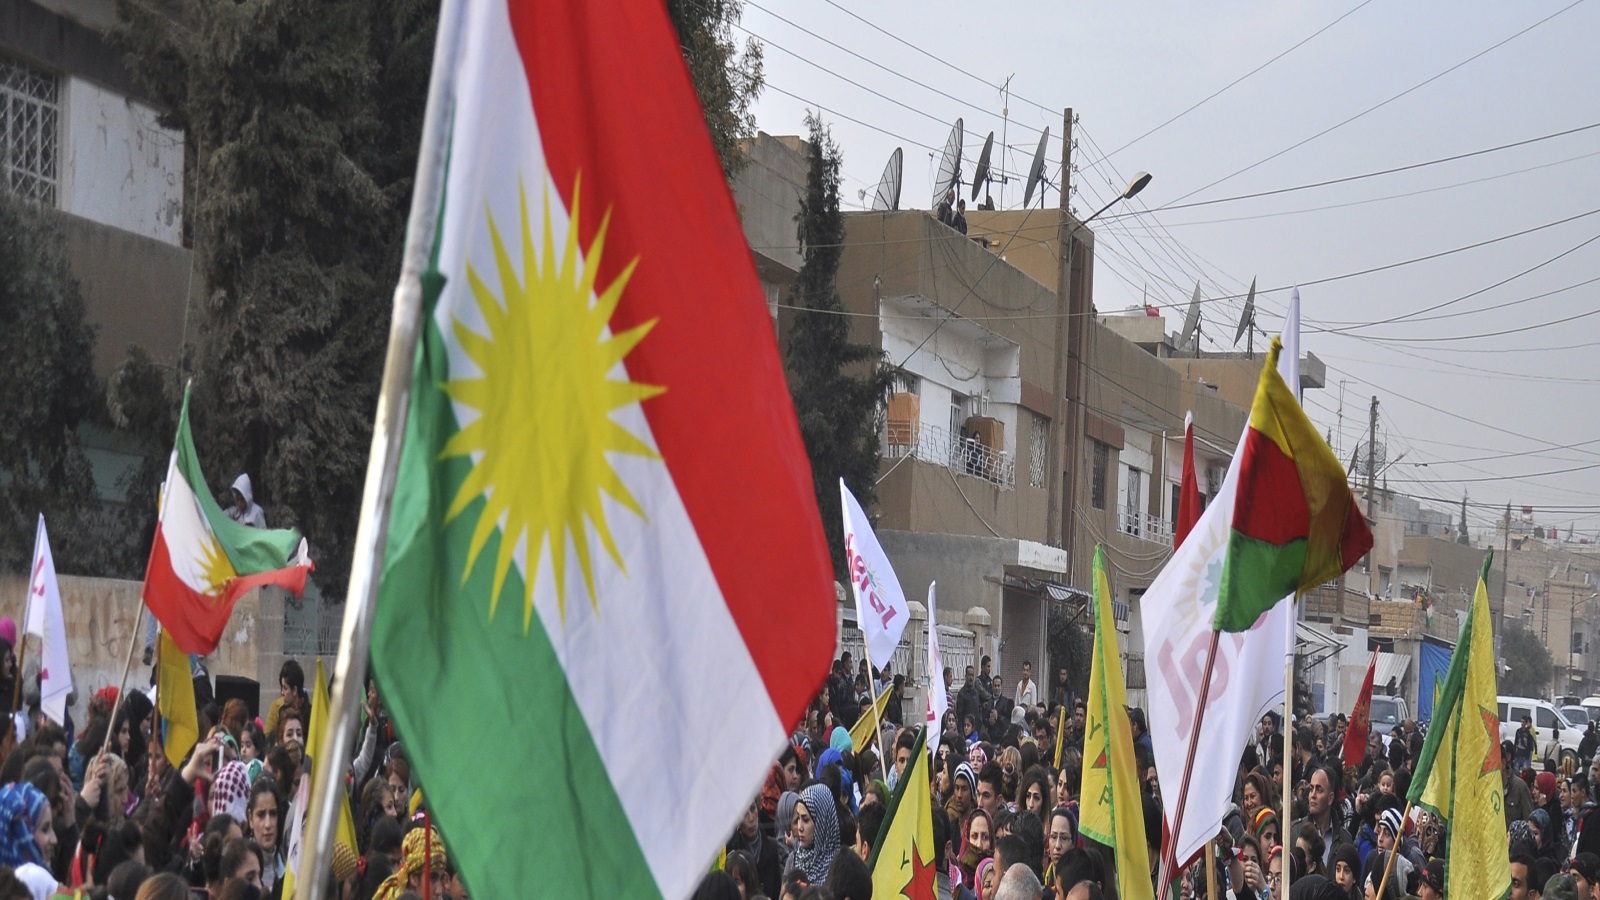 كما أن للأكراد دعوة للهدوء والمراجعة، فهي دعوة أخرى لحكومات الجوار بإشراك الكرد في العملية السياسية وإعطاءهم حقهم في اللغة القومية والتعليم وحقوقهم الاجتماعية والاقتصادية الأخرى